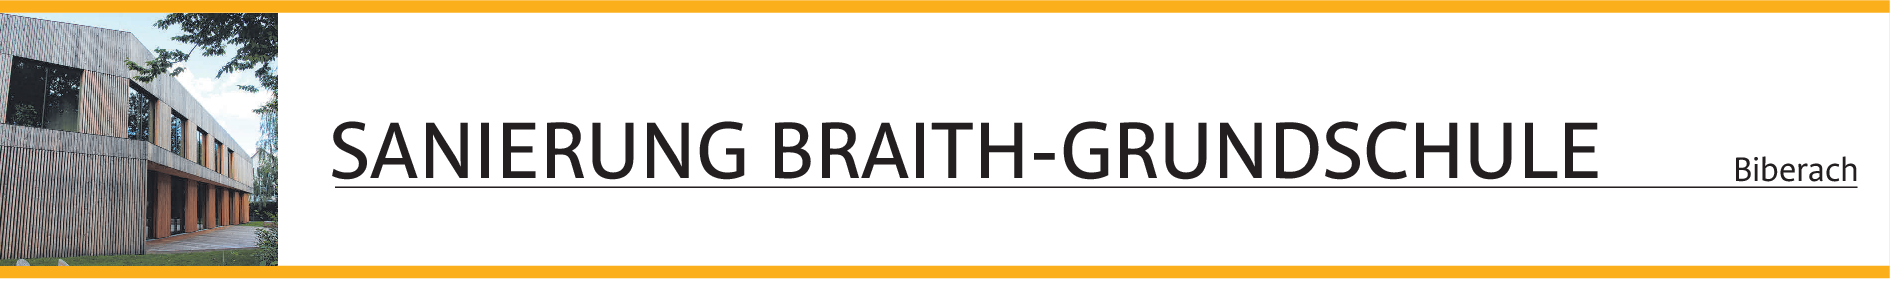 Sanierte Braith-Grundschule in Biberach: Elemente der historischen Schule herausgearbeitet